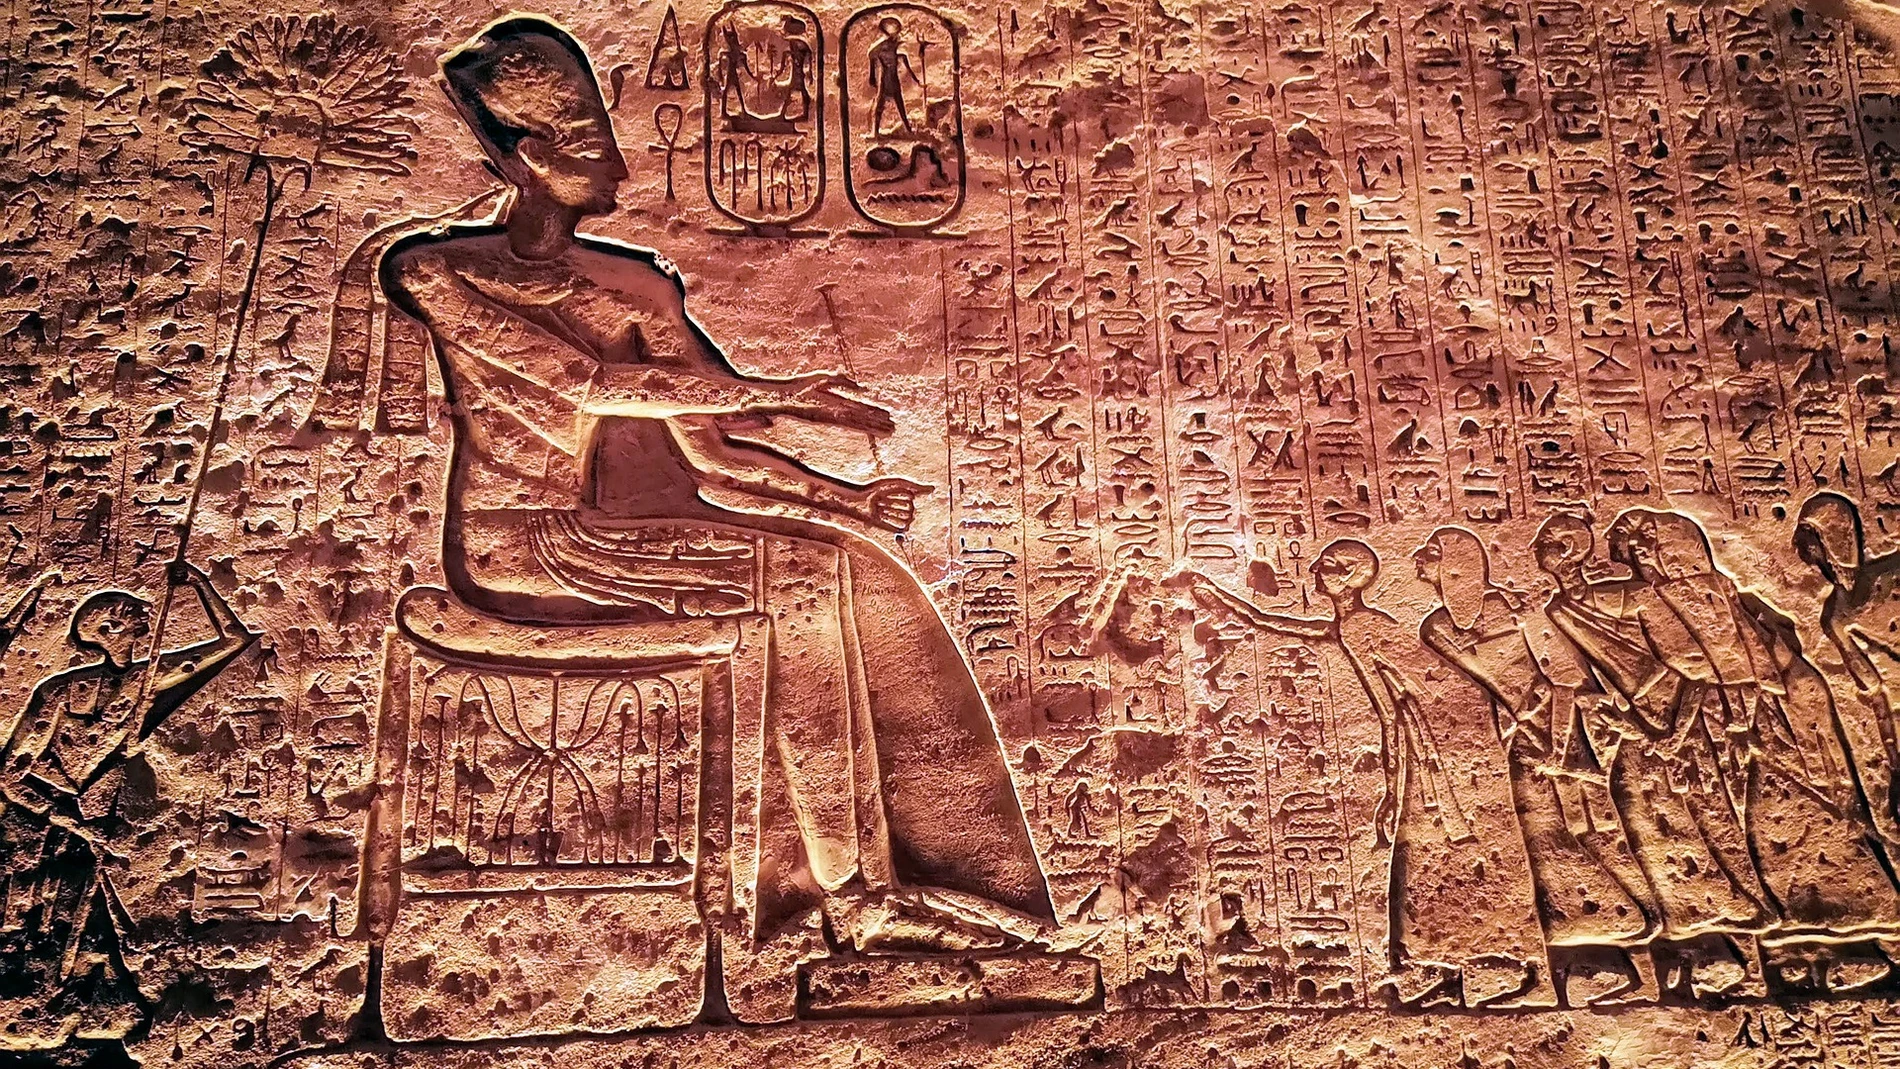 Sacerdotes de Amón ofrecen esencias a su dios, en un grabado del Templo de Luxor.